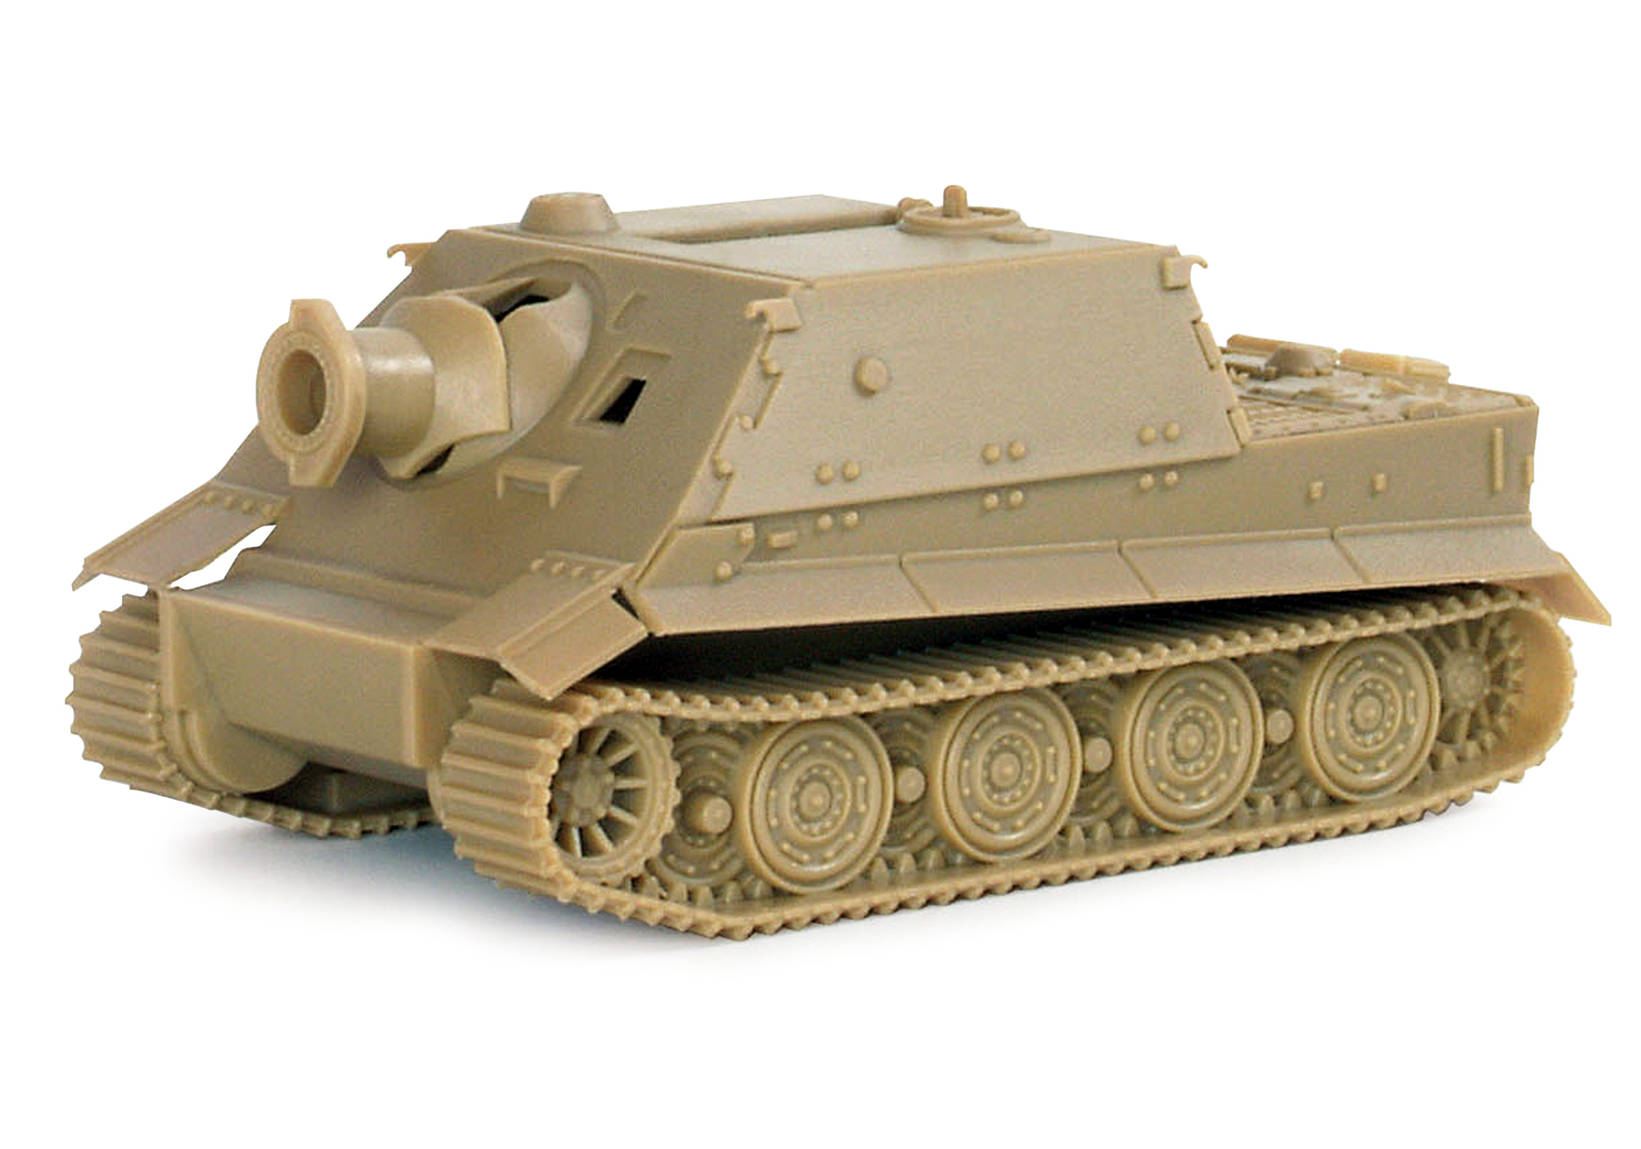 38 cm Panzermörser "Sturmtiger"